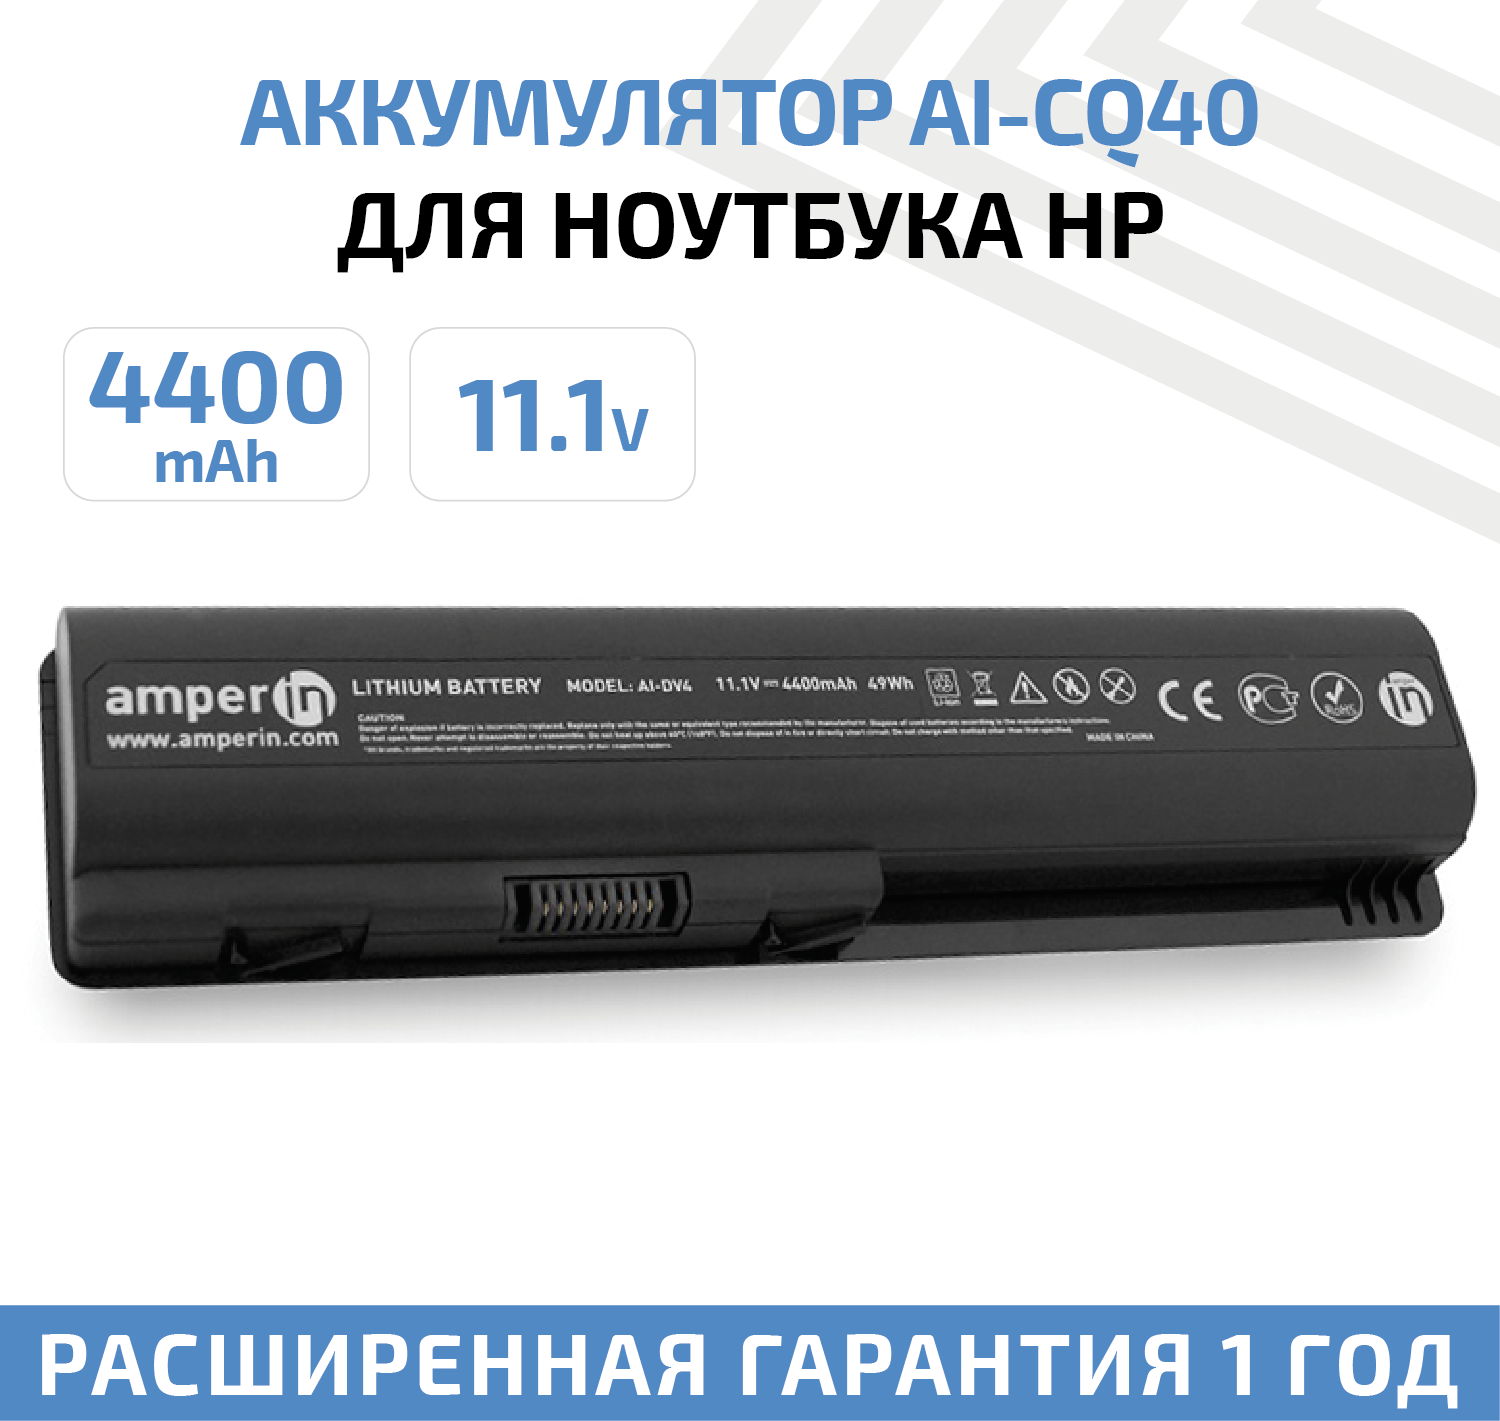 Аккумулятор (АКБ, аккумуляторная батарея) Amperin AI-CQ40 для ноутбука HP Pavilion DV4, Compaq CQ40, 11.1В, 4400мАч